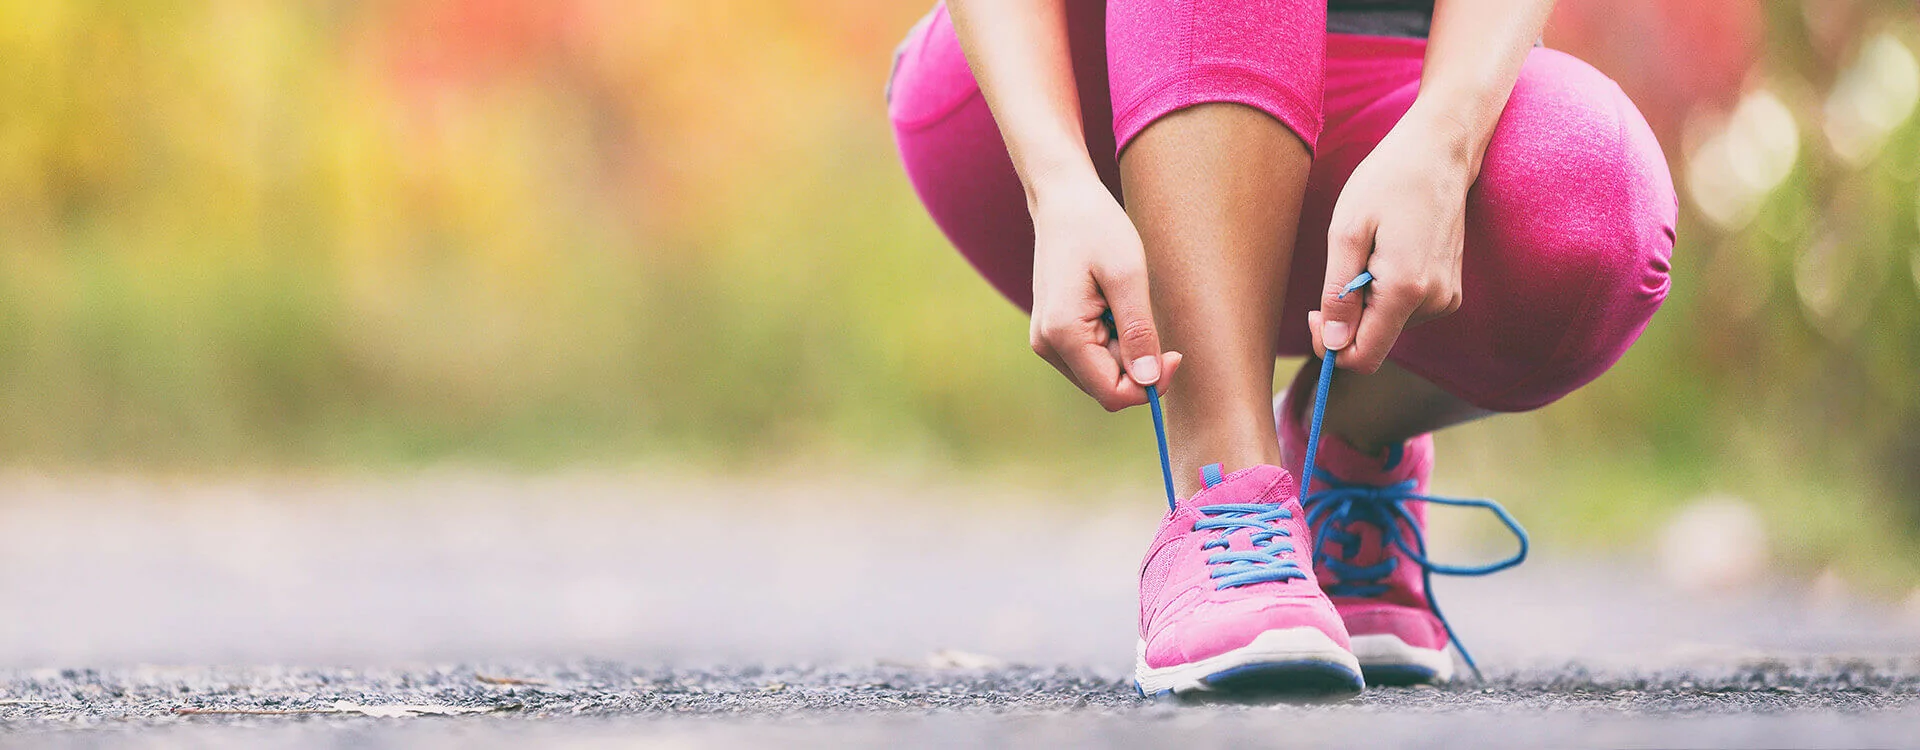 Commencez la course à pied sans faux pas | Univers Pharmacie